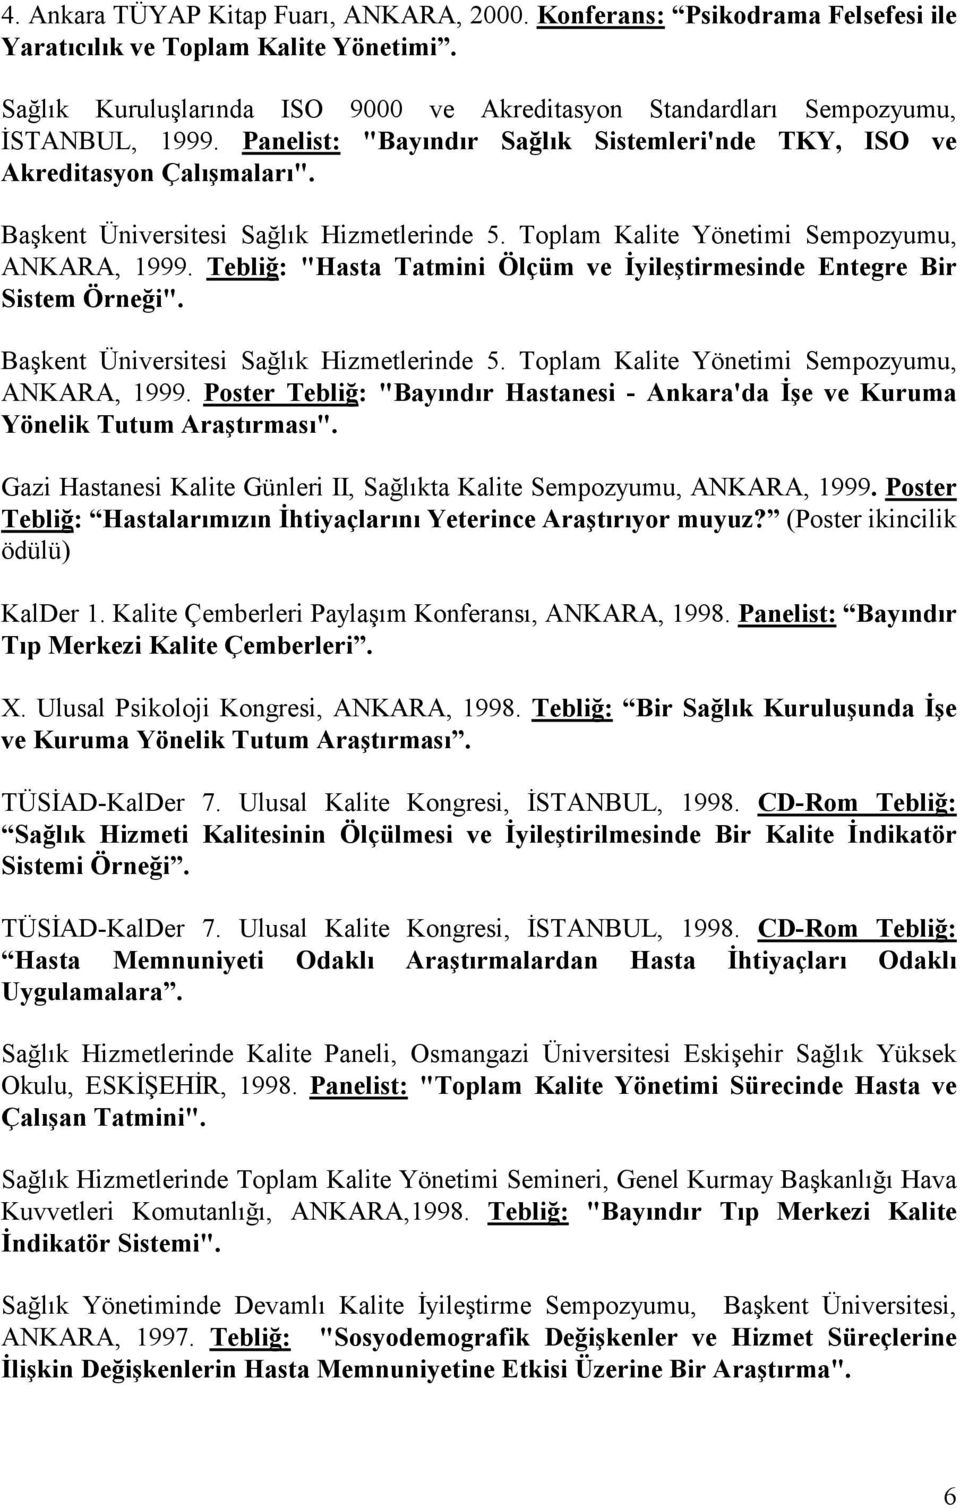 Başkent Üniversitesi Sağlık Hizmetlerinde 5. Toplam Kalite Yönetimi Sempozyumu, ANKARA, 1999. Tebliğ: "Hasta Tatmini Ölçüm ve İyileştirmesinde Entegre Bir Sistem Örneği".